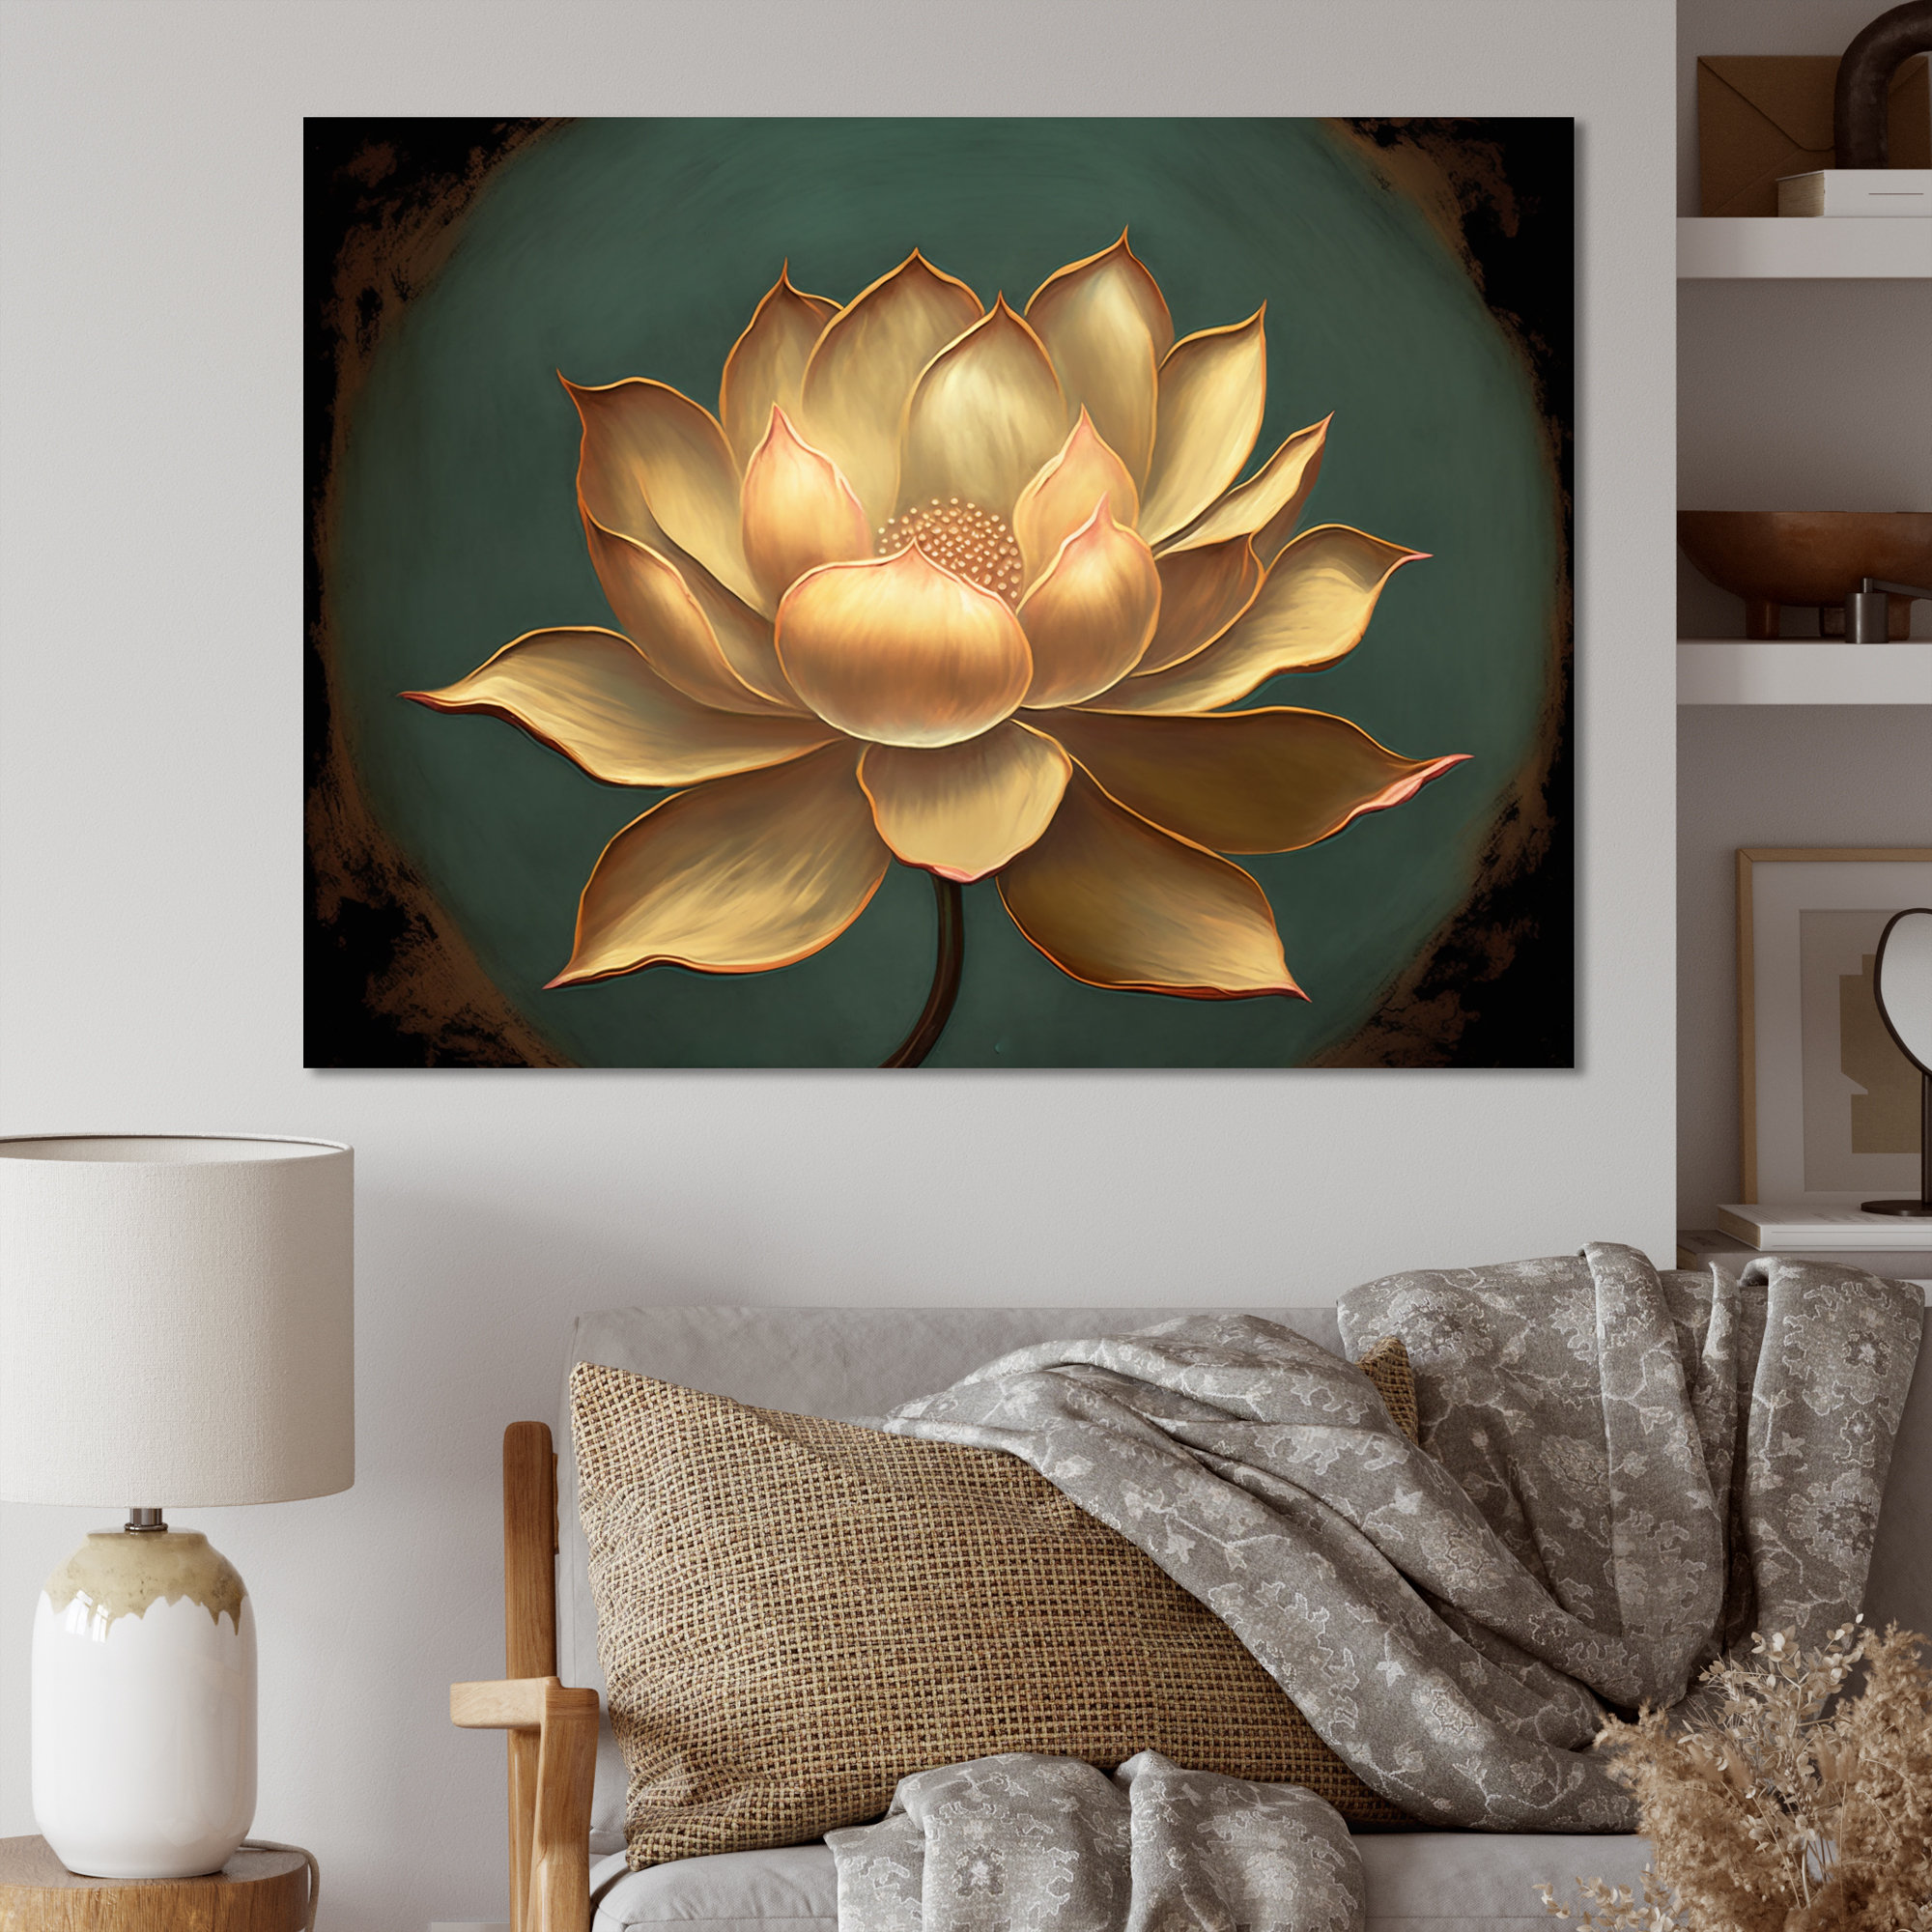 https://assets.wfcdn.com/im/03226327/compr-r85/2439/243921055/blossoming-white-vintage-lotus-blossoming-vintage-lotus-on-canvas-print.jpg